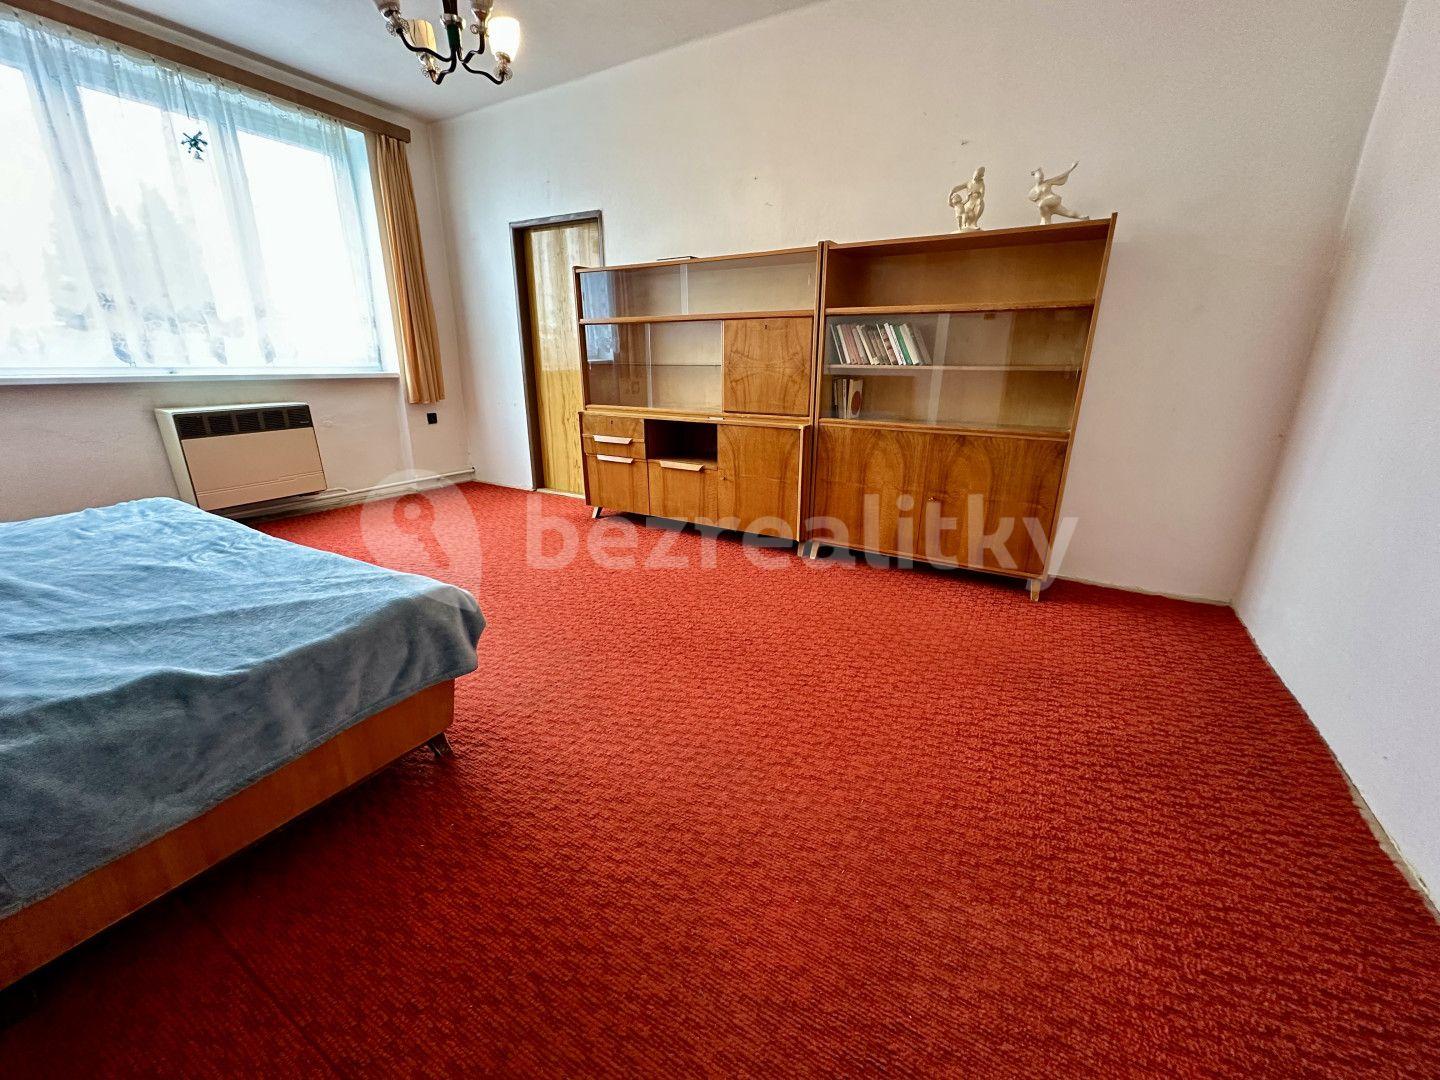 3 bedroom flat for sale, 73 m², Za Branou, Pacov, Vysočina Region